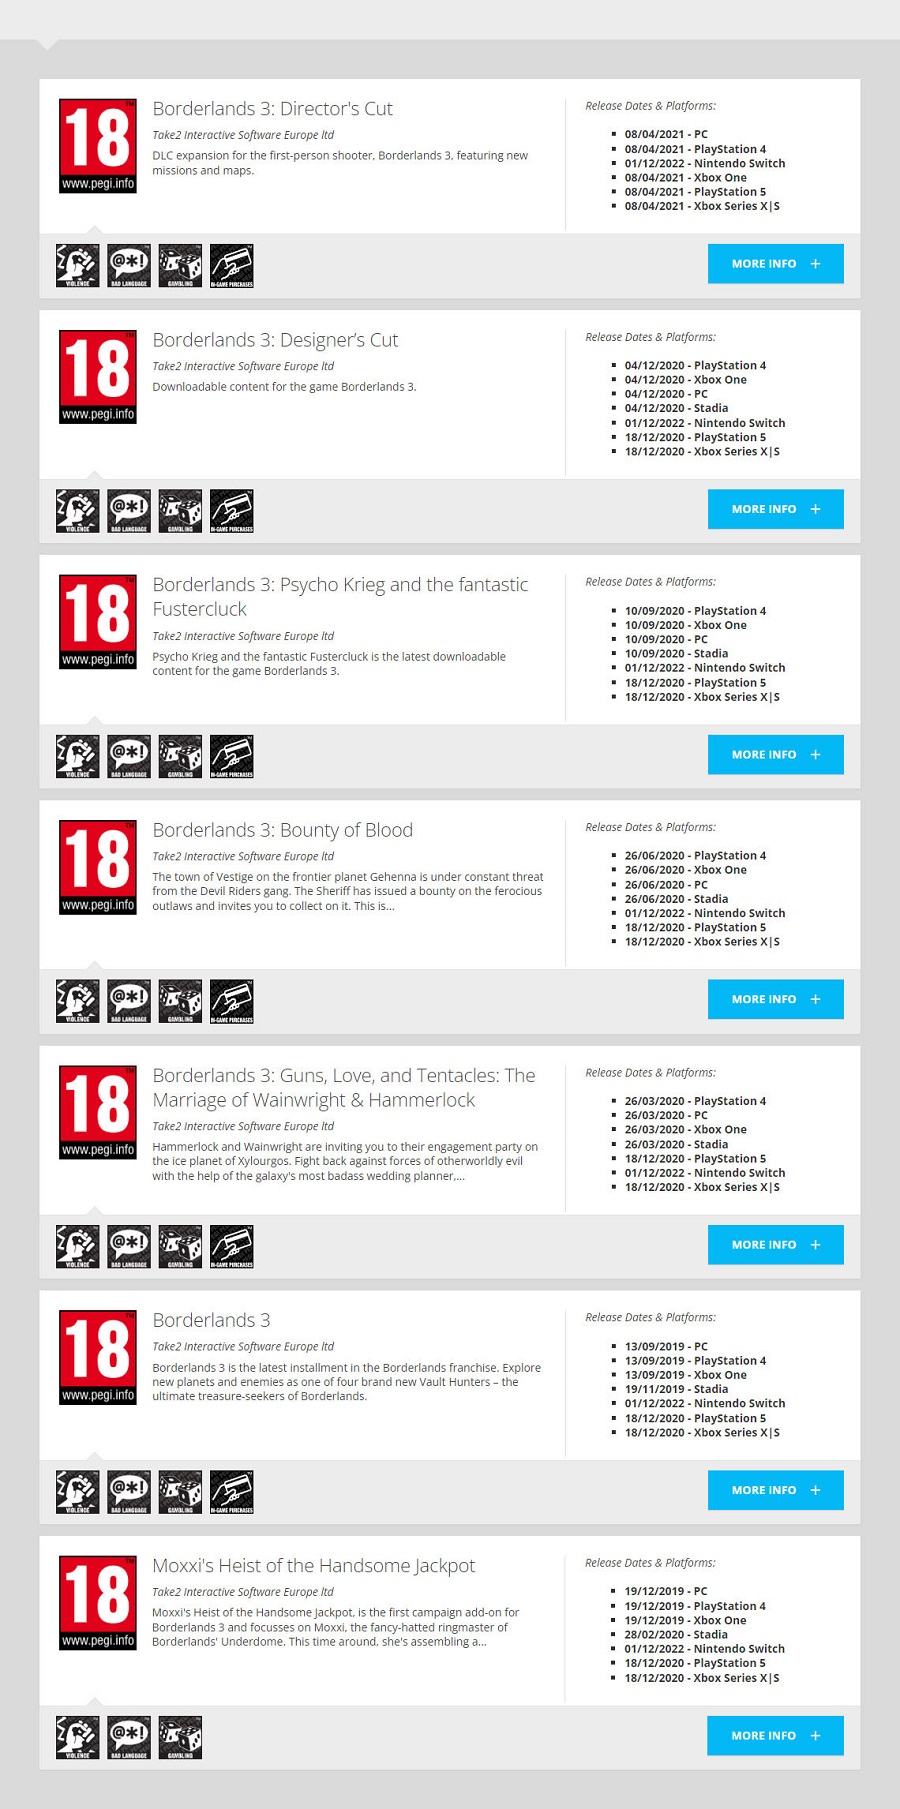 Baldige Ankündigung? Die Nintendo Switch-Version von Borderlands 3 hat eine Altersfreigabe der Europäischen Kommission PEGI-2